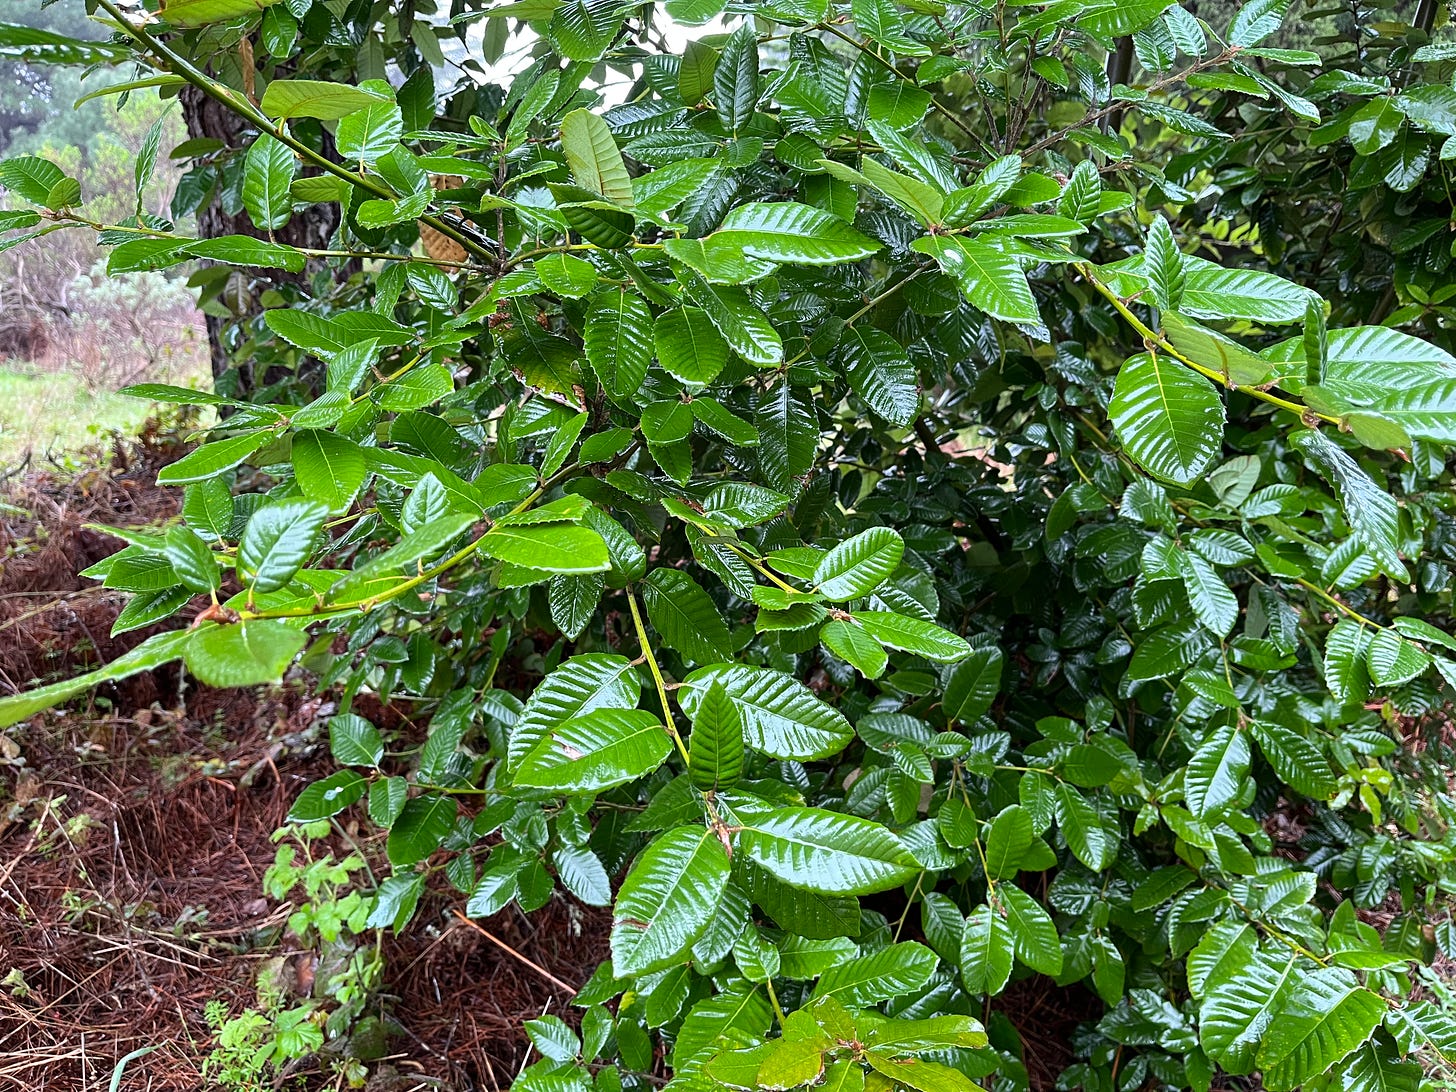 Tan oak leaves